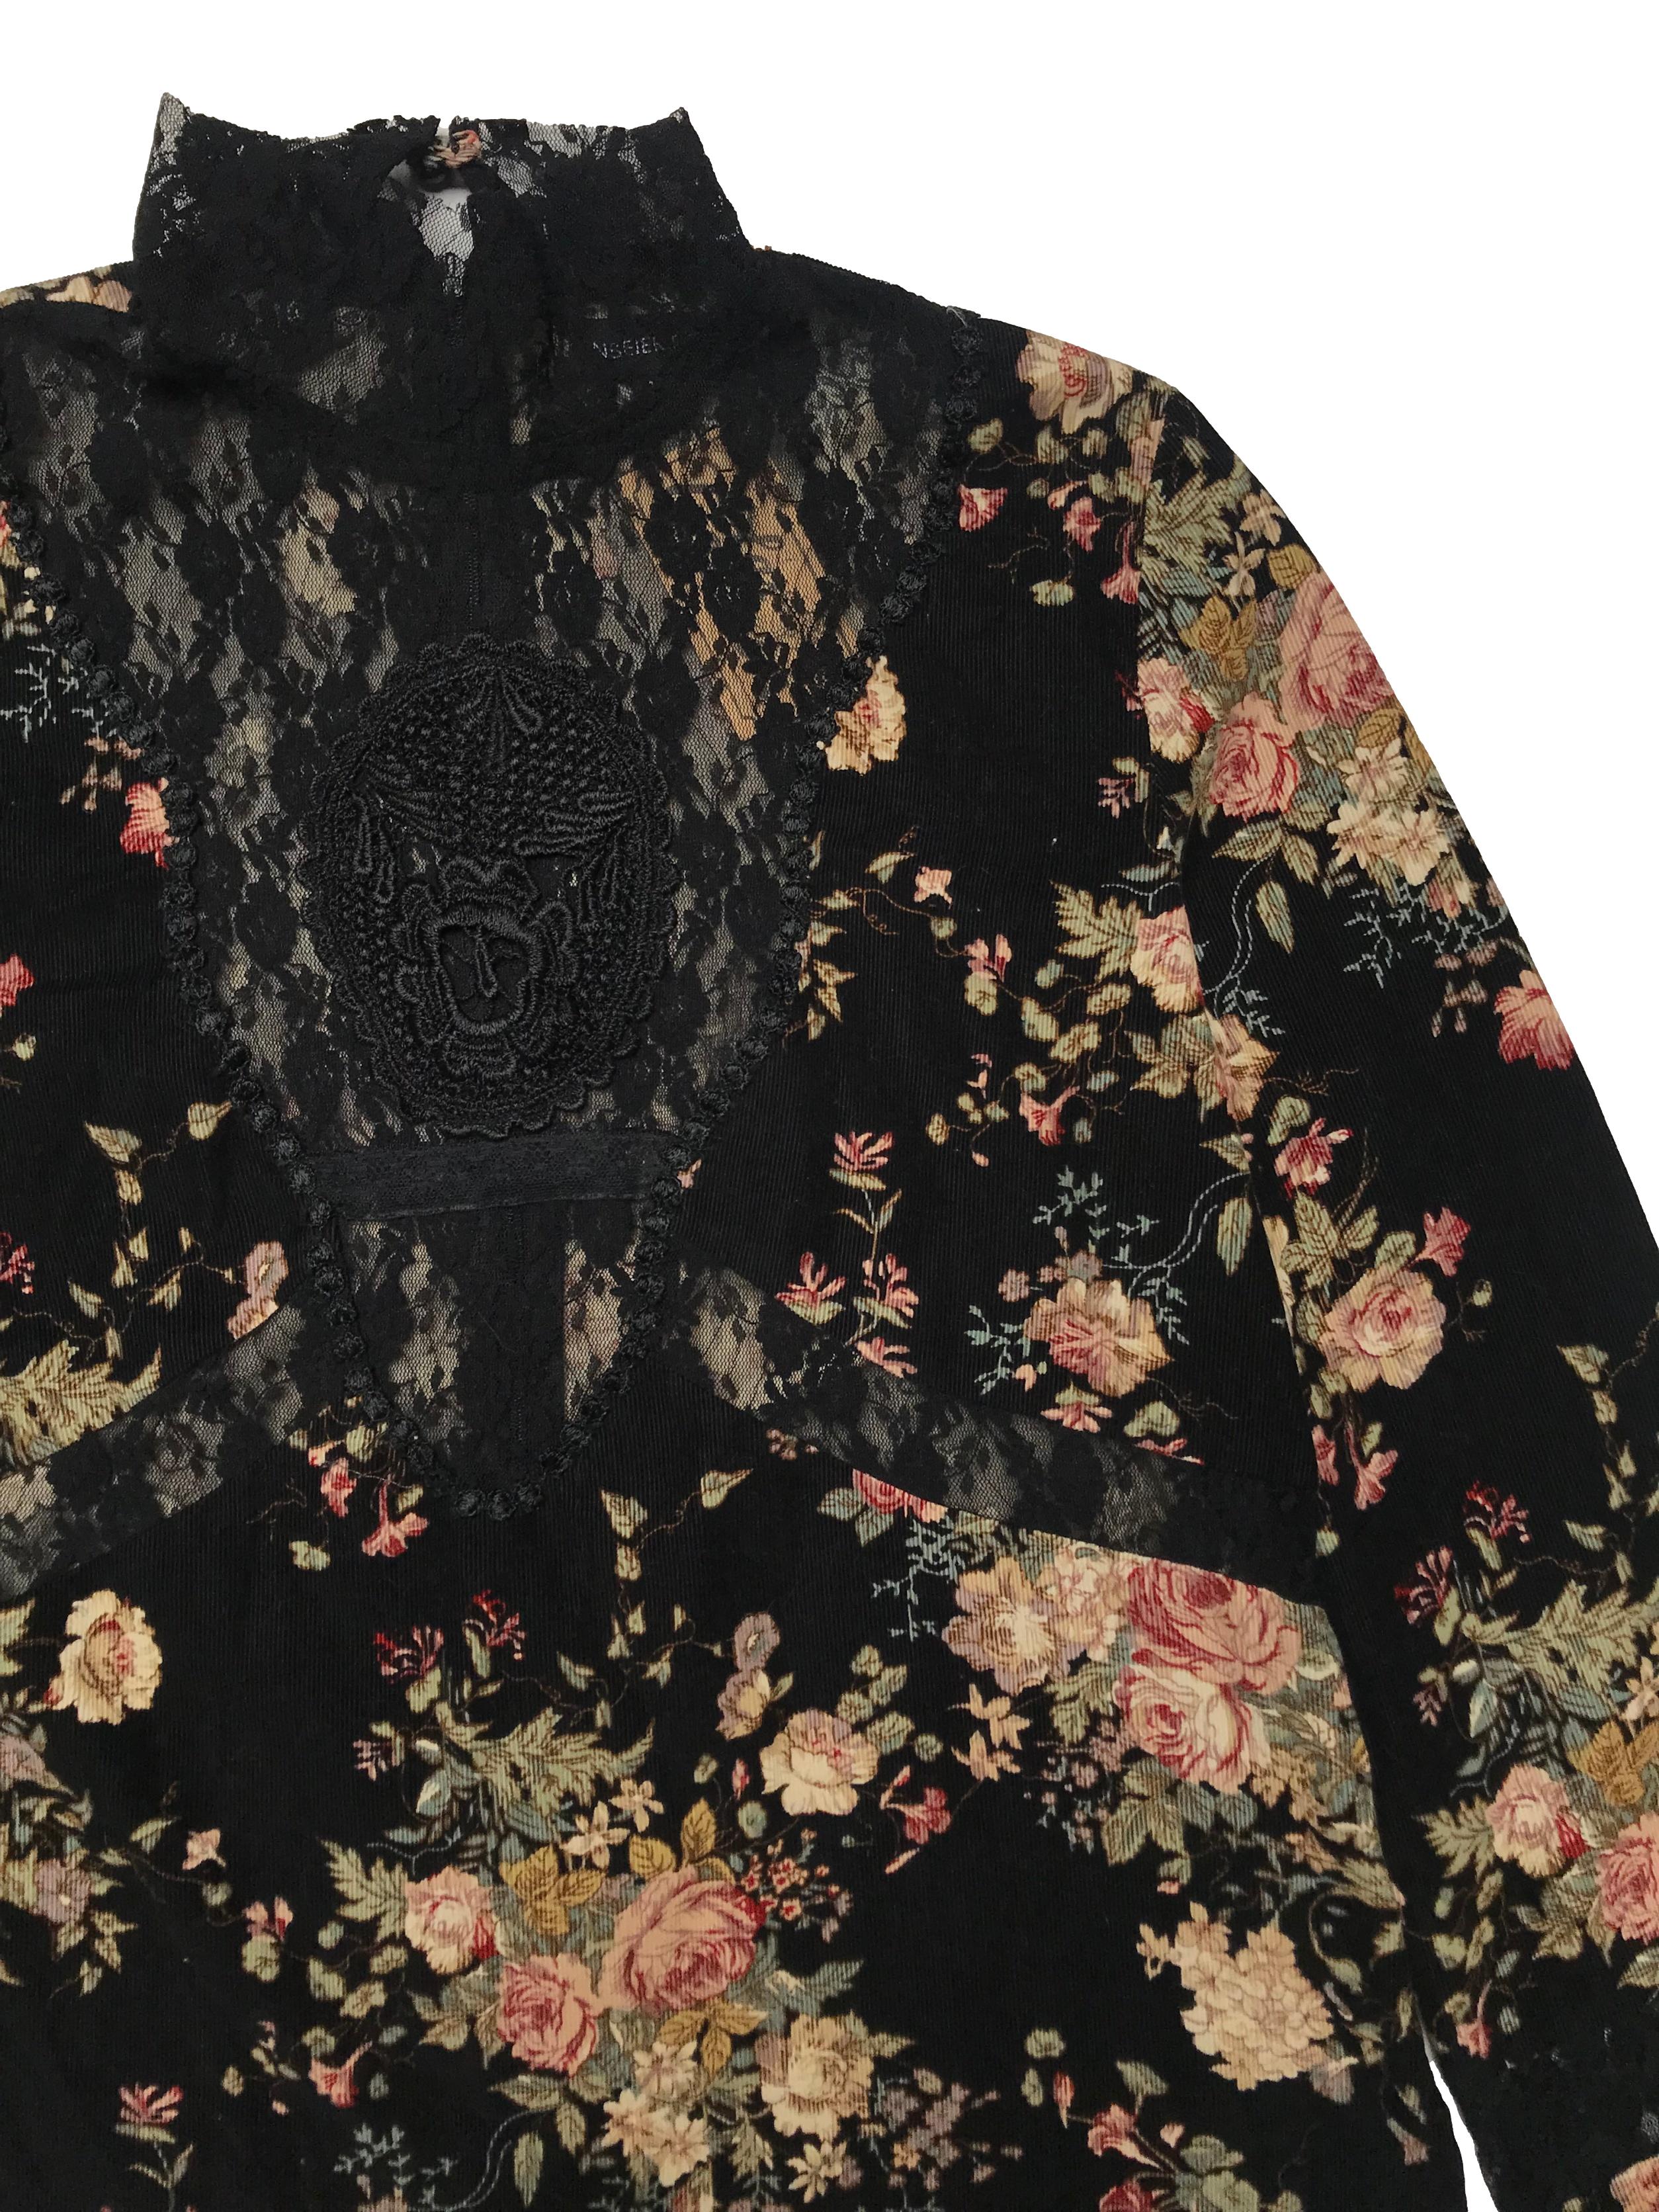 Blusa de pana negra con estampado de flores, detalles de encaje, cuello alto con cierre y botón posteriores, puños con elástico y aberturas laterales en la basta. Busto 100cm Largo 53cm